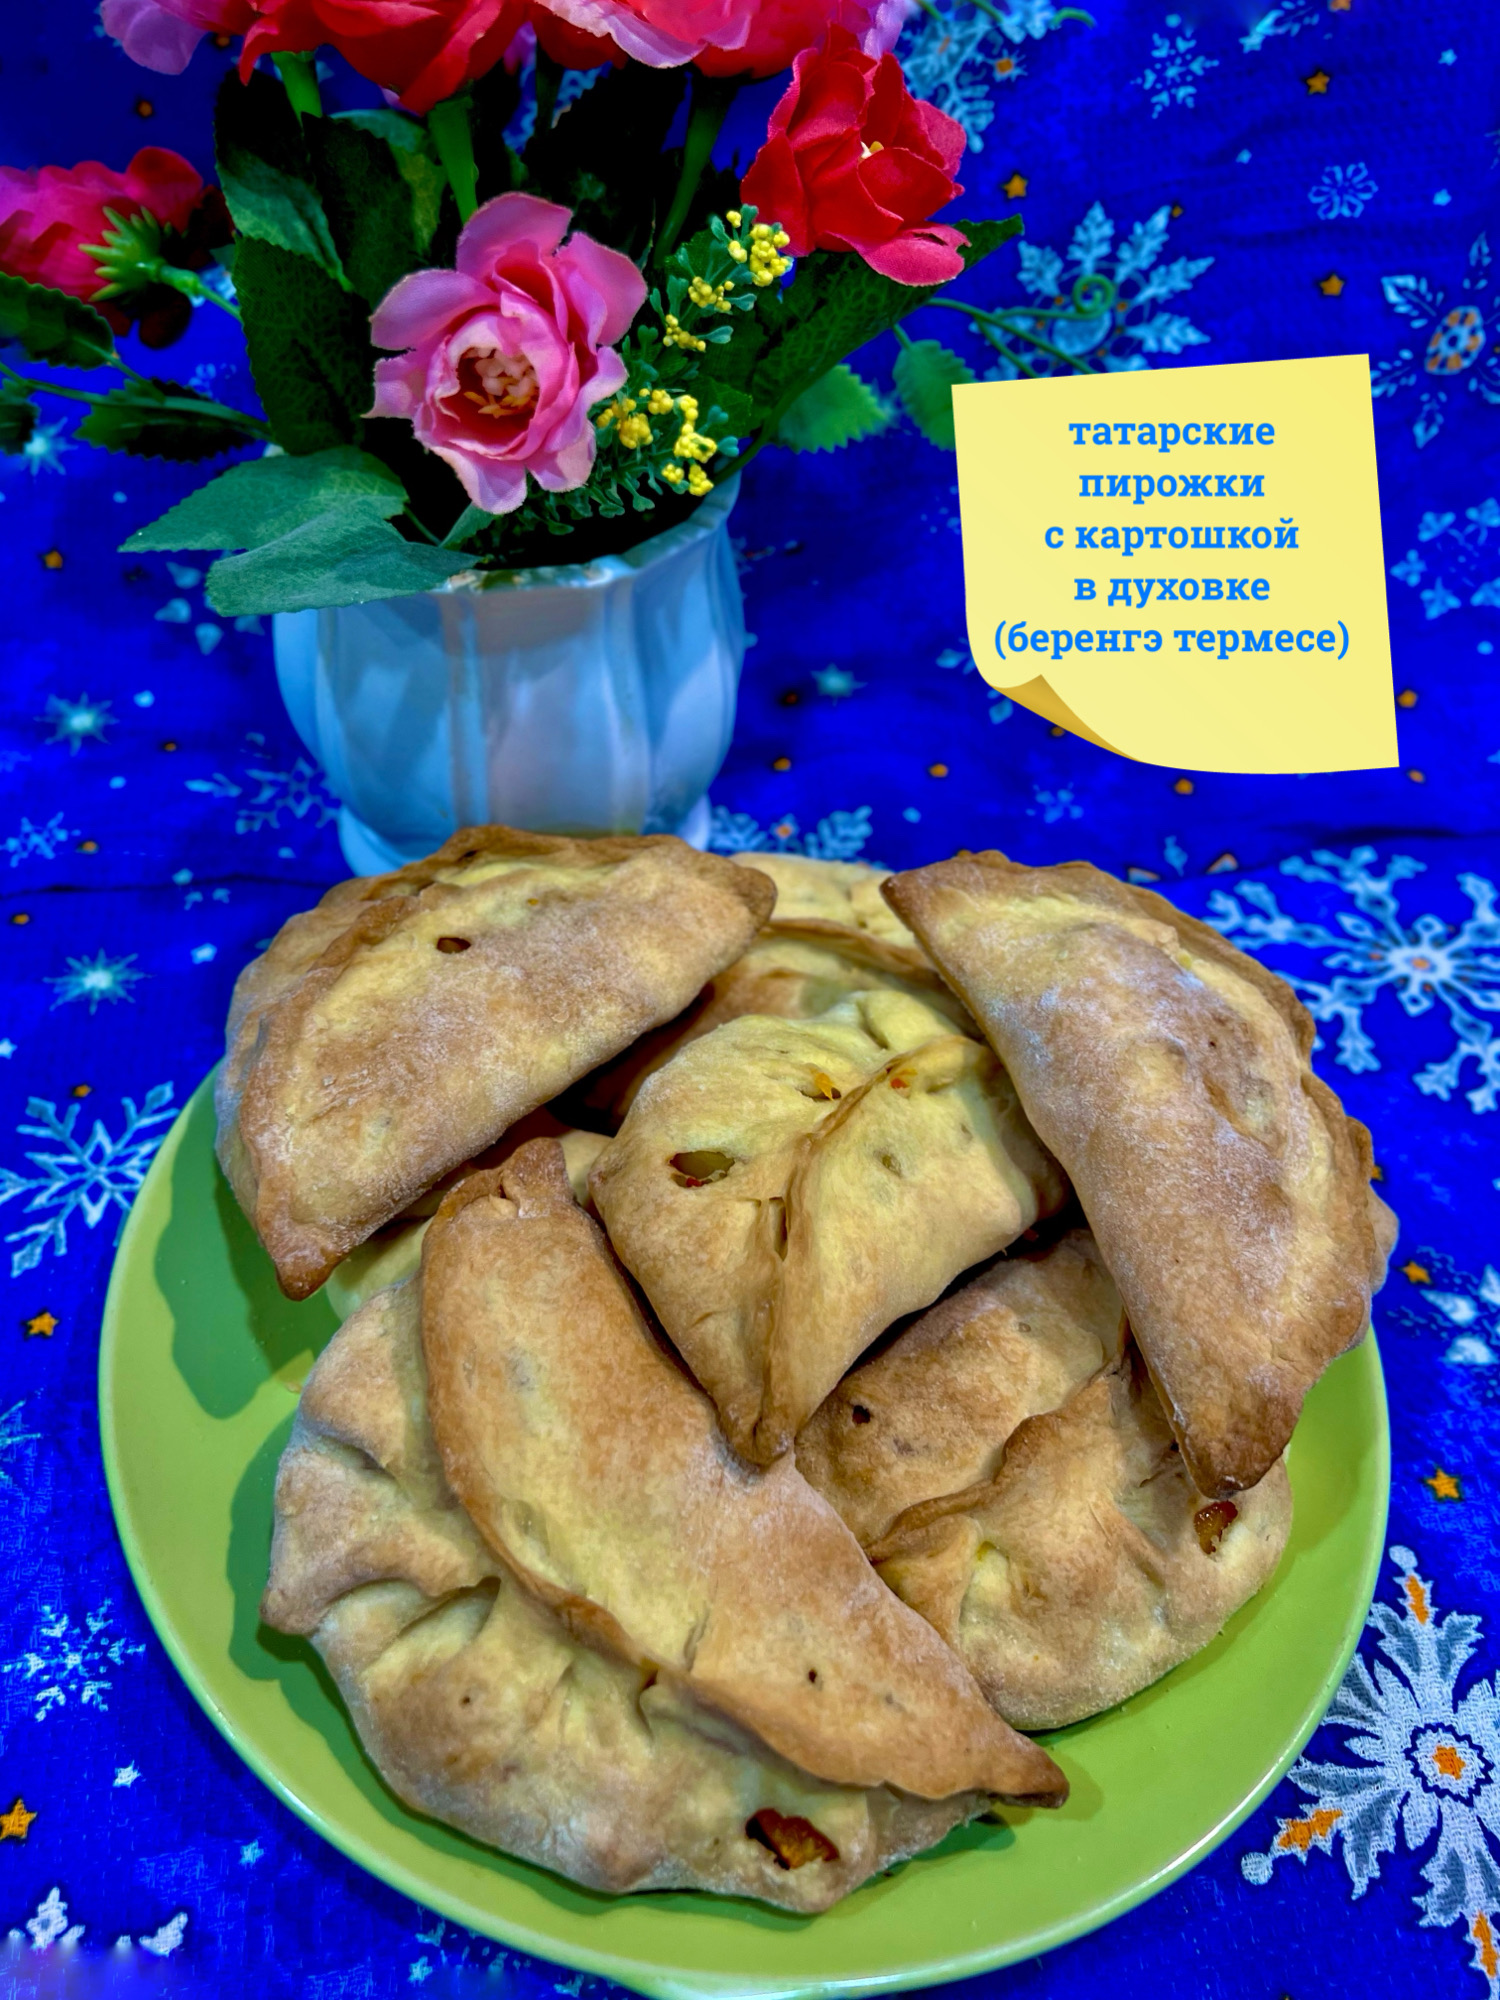 Татарские пирожки с картошкой в духовке (беренгэ термесе)